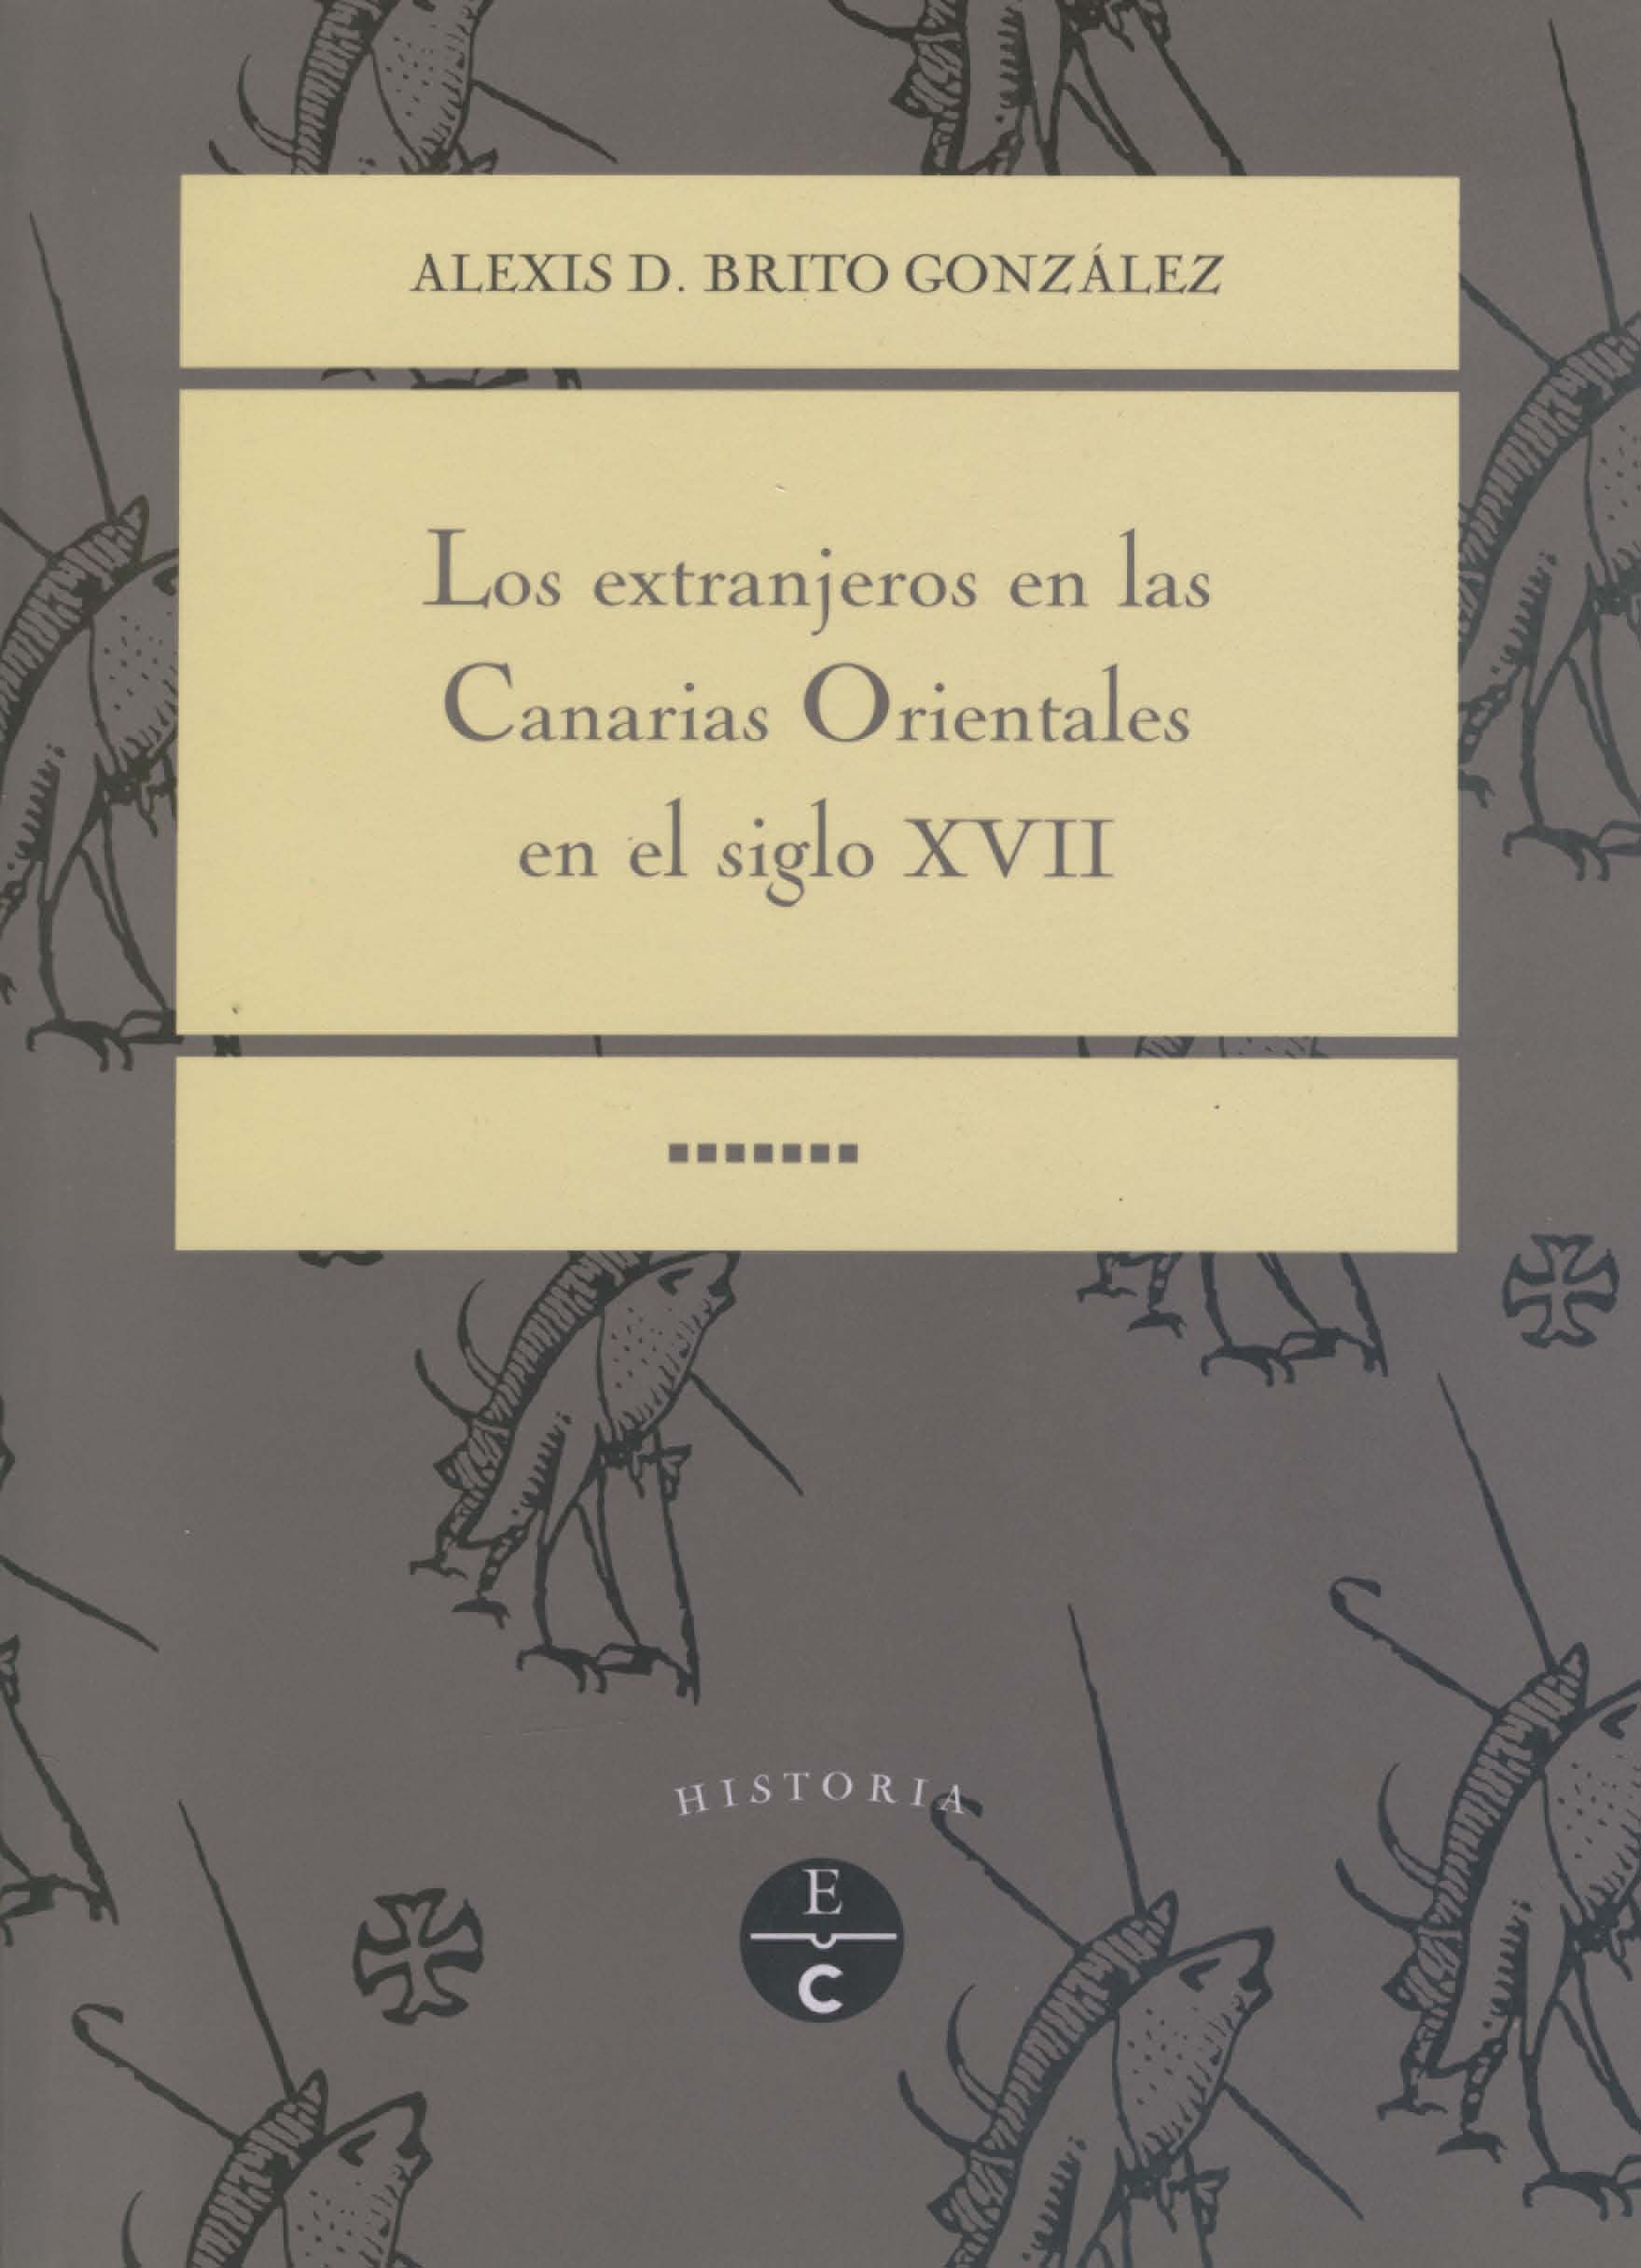 Los extranjeros en las Canarias Orientales en el Siglo XVII